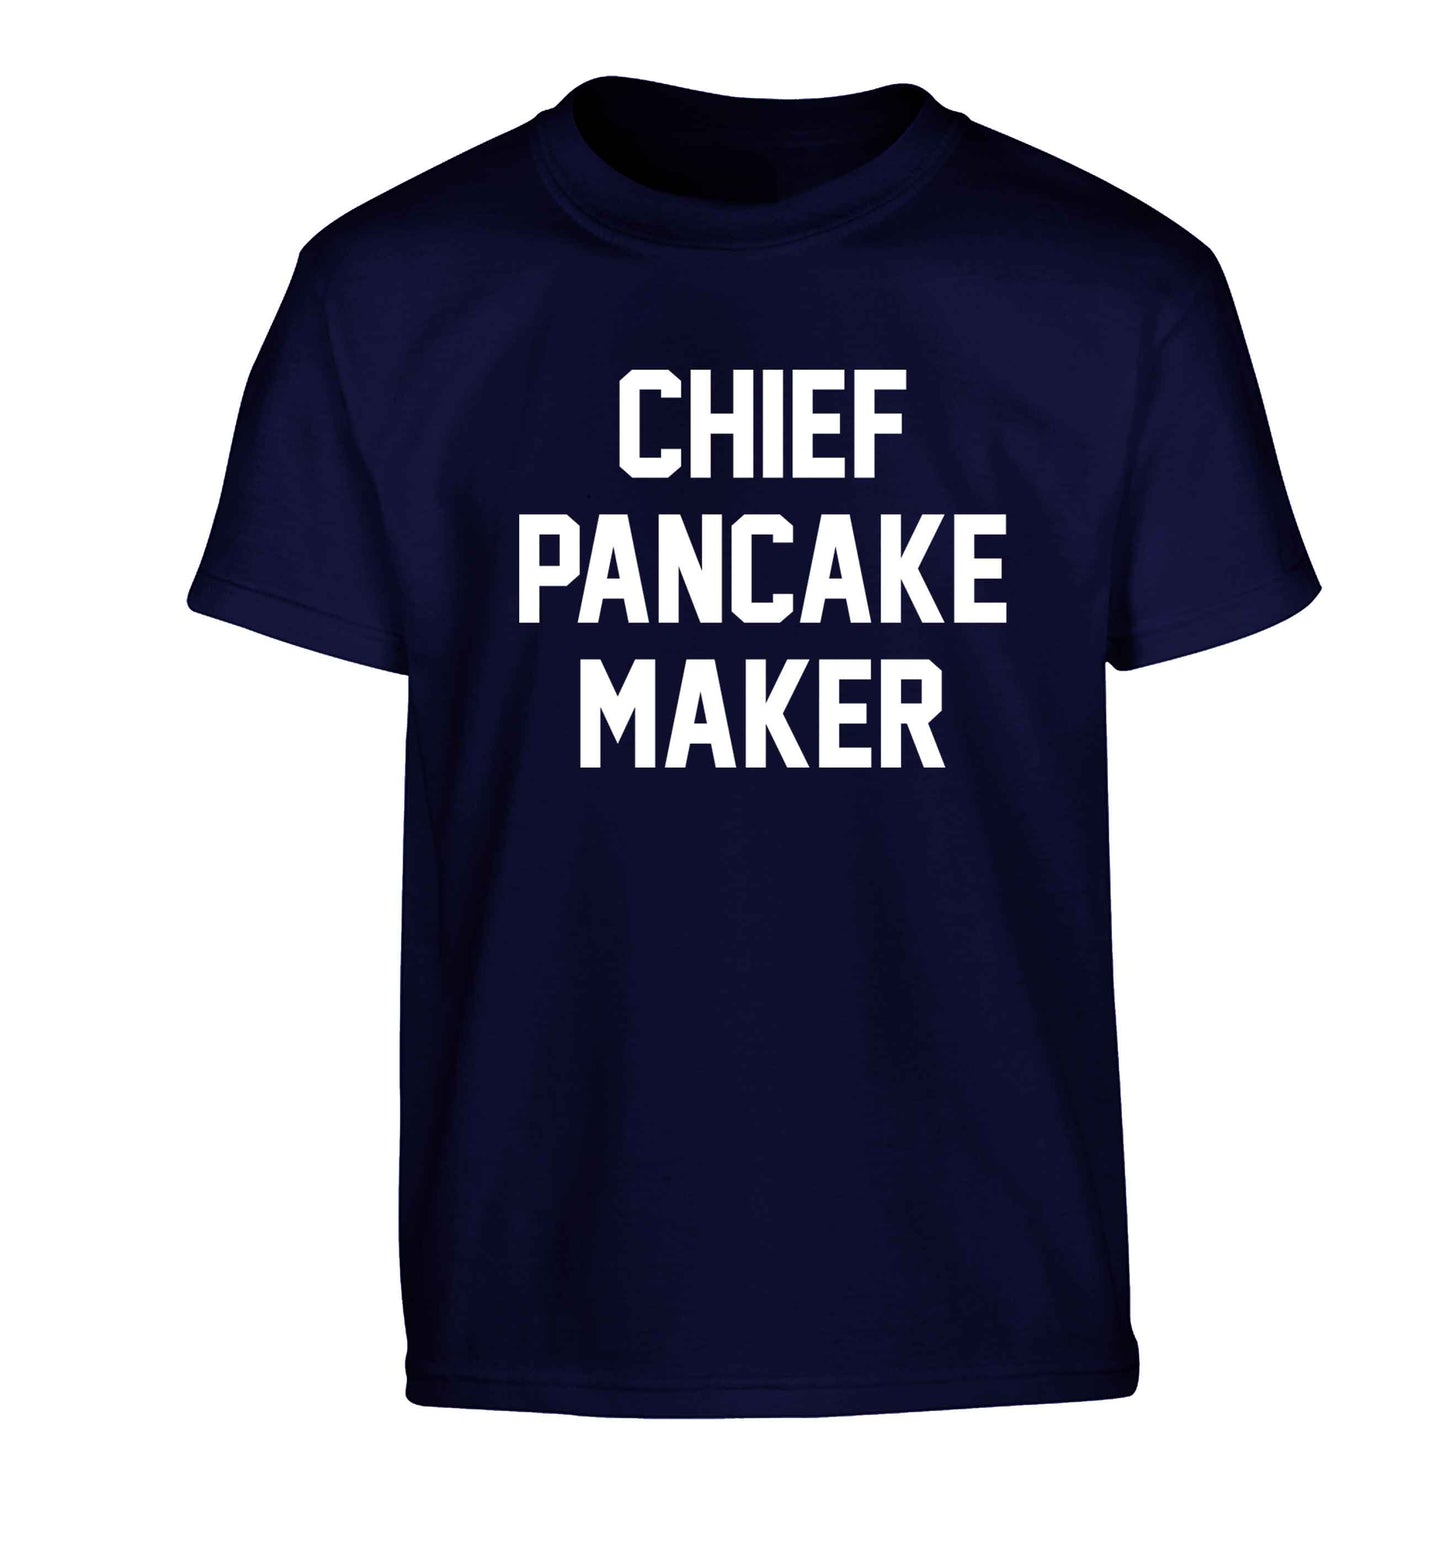 Chief pancake maker Children's navy Tshirt 12-13 Years